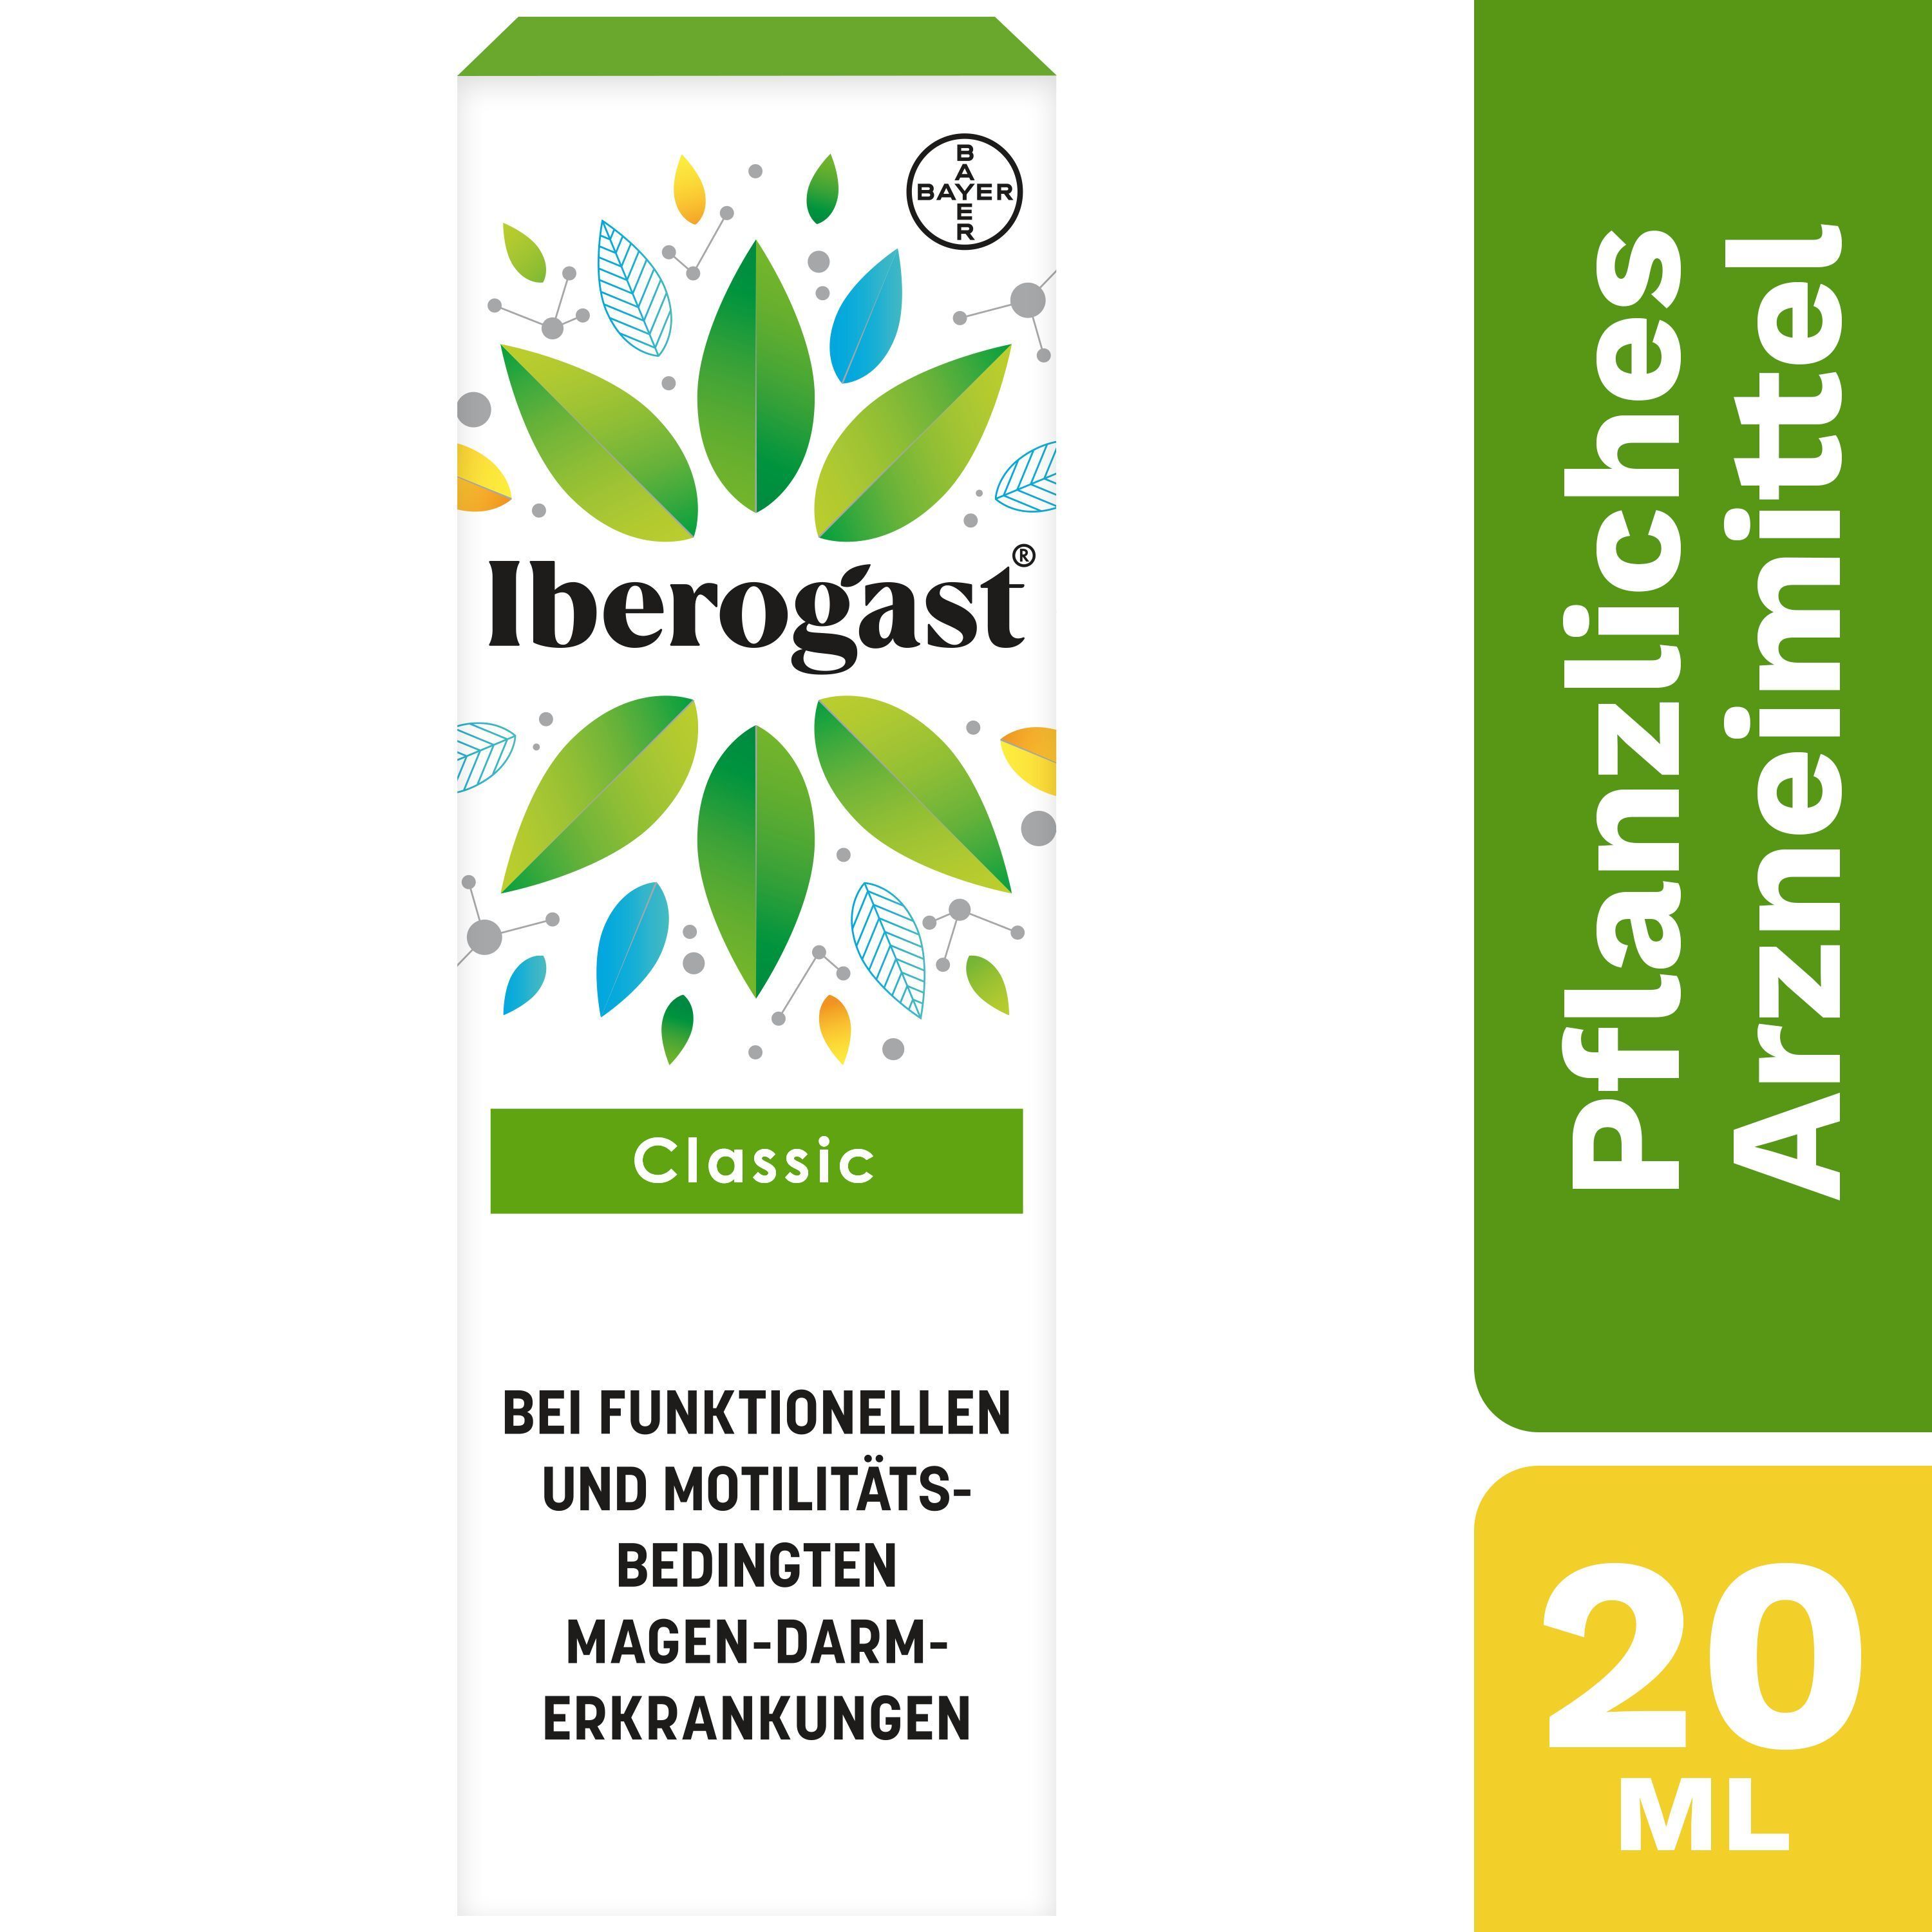 Iberogast® Classic Arzneimittel bei motilitätsbedingten und funktionellen Magen-Darm-Beschwerden